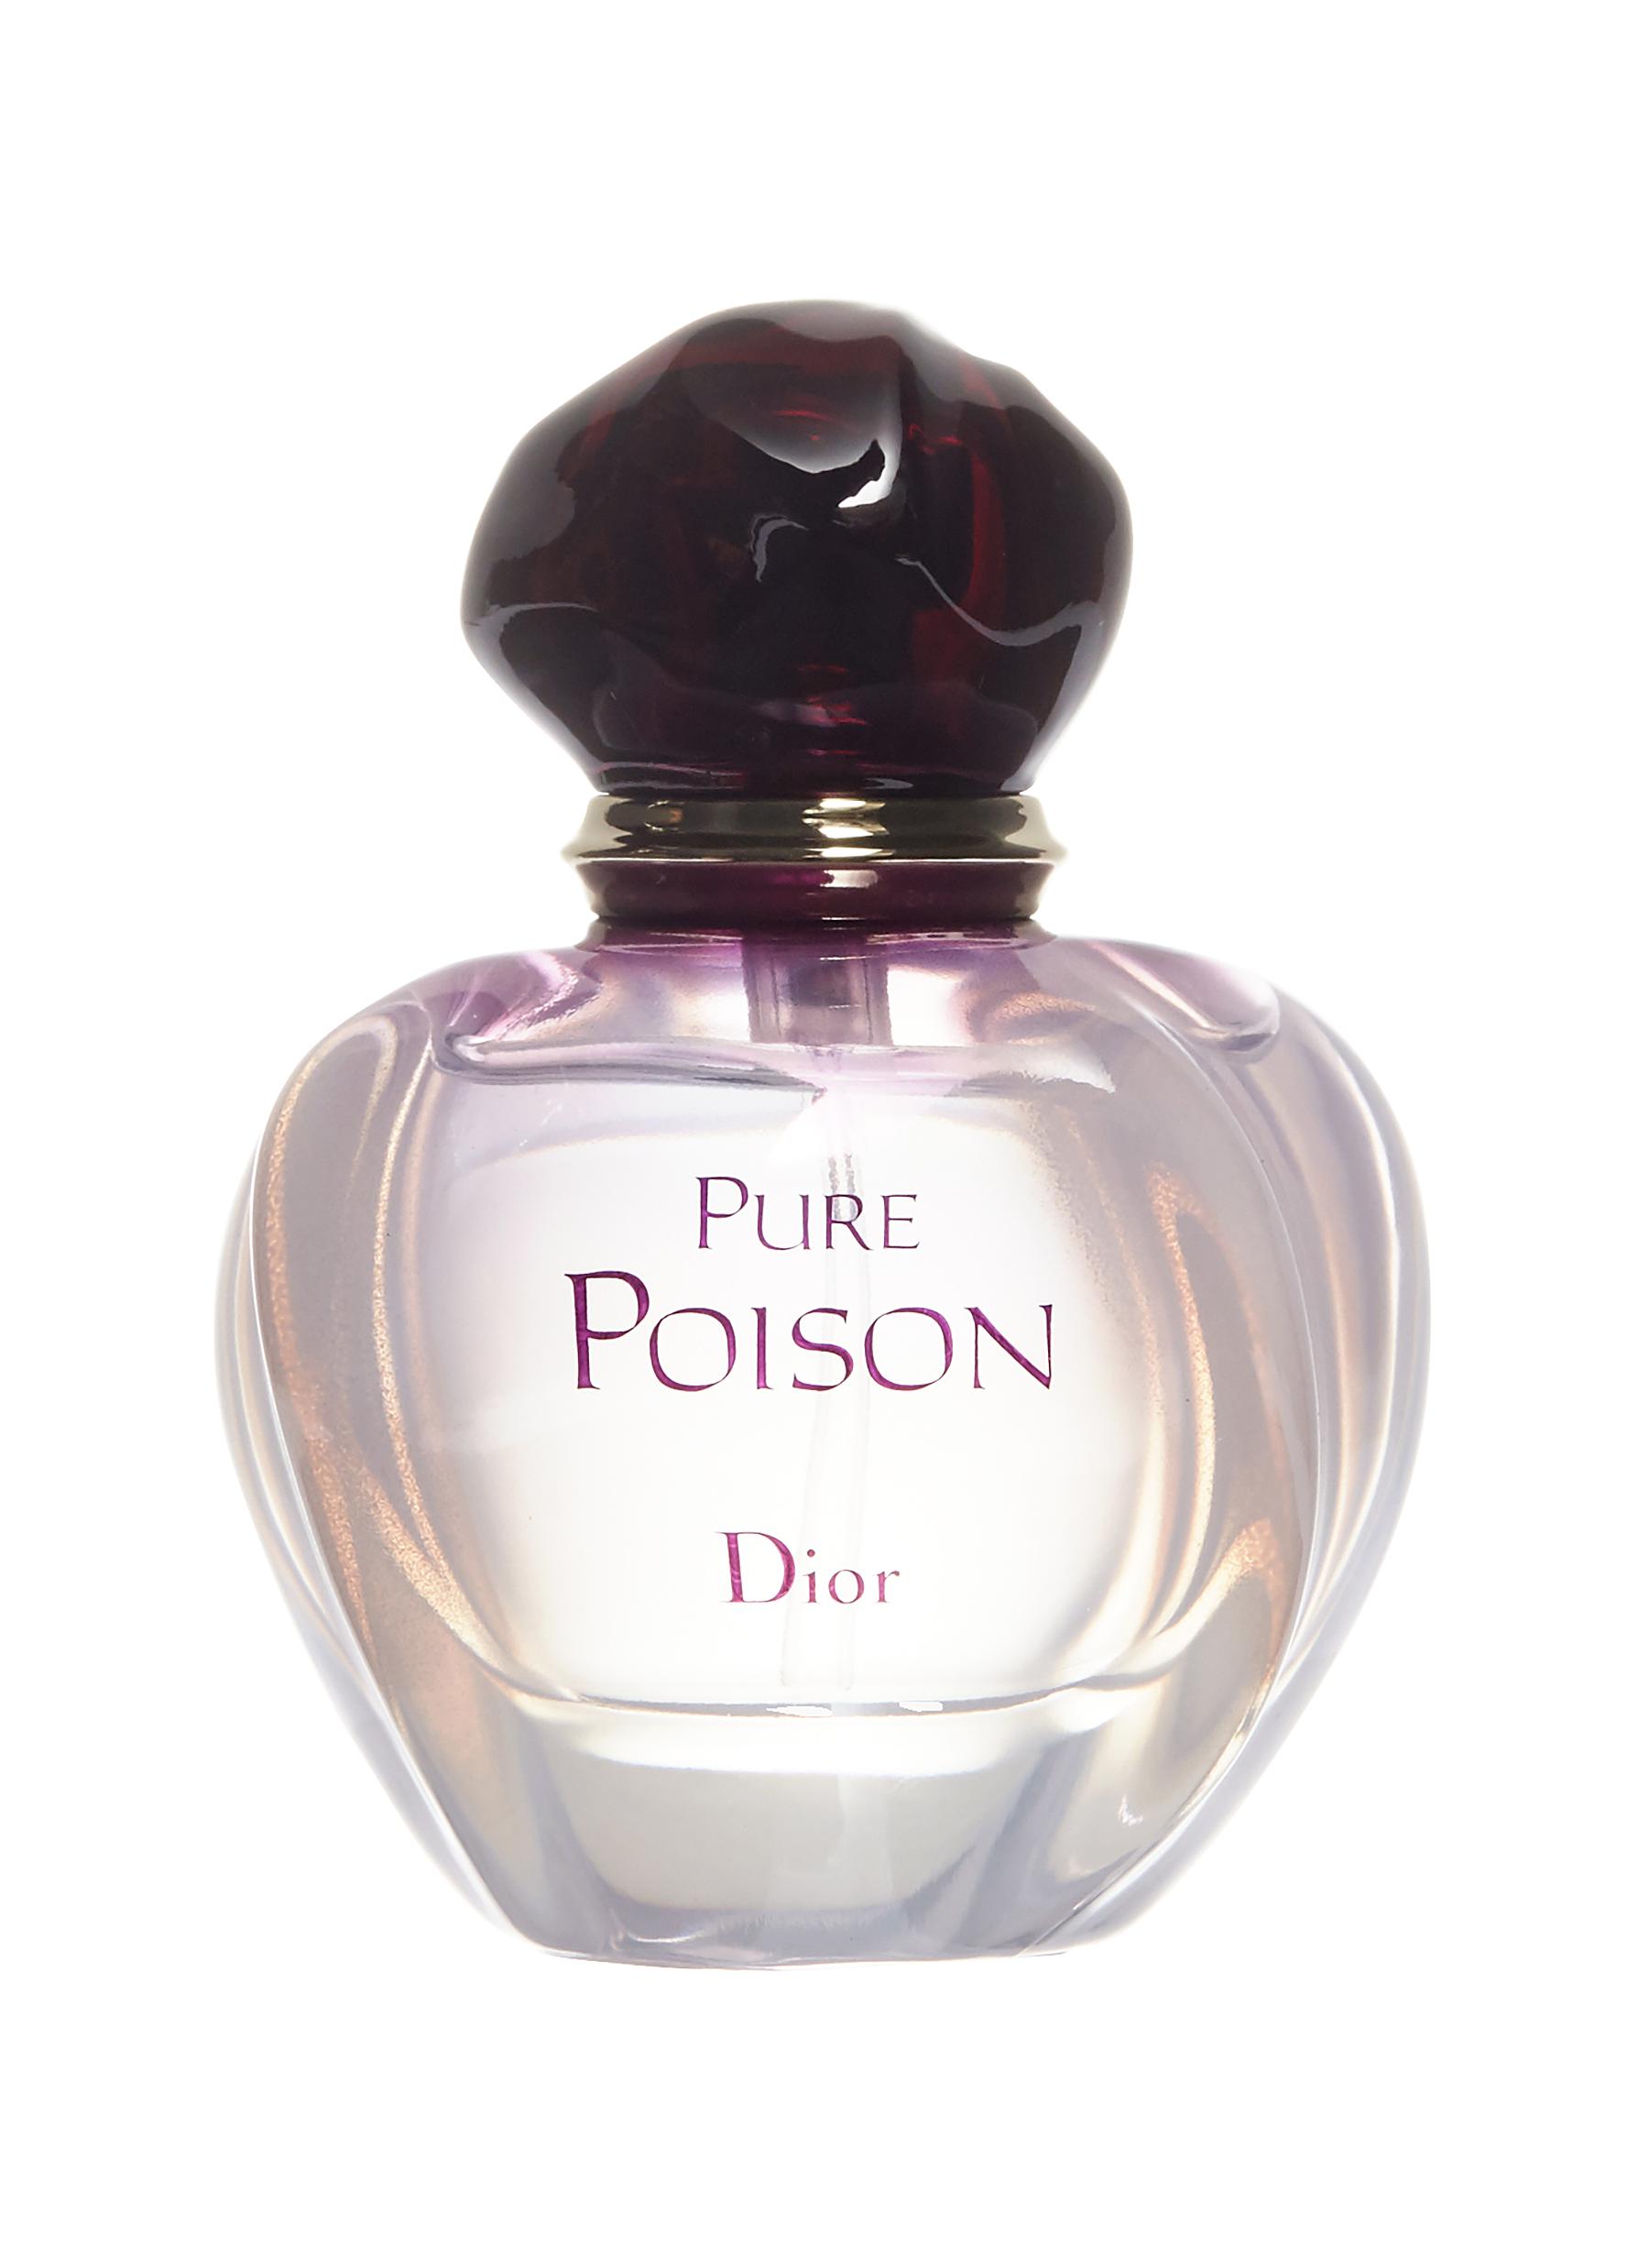 poison dior 50 ml